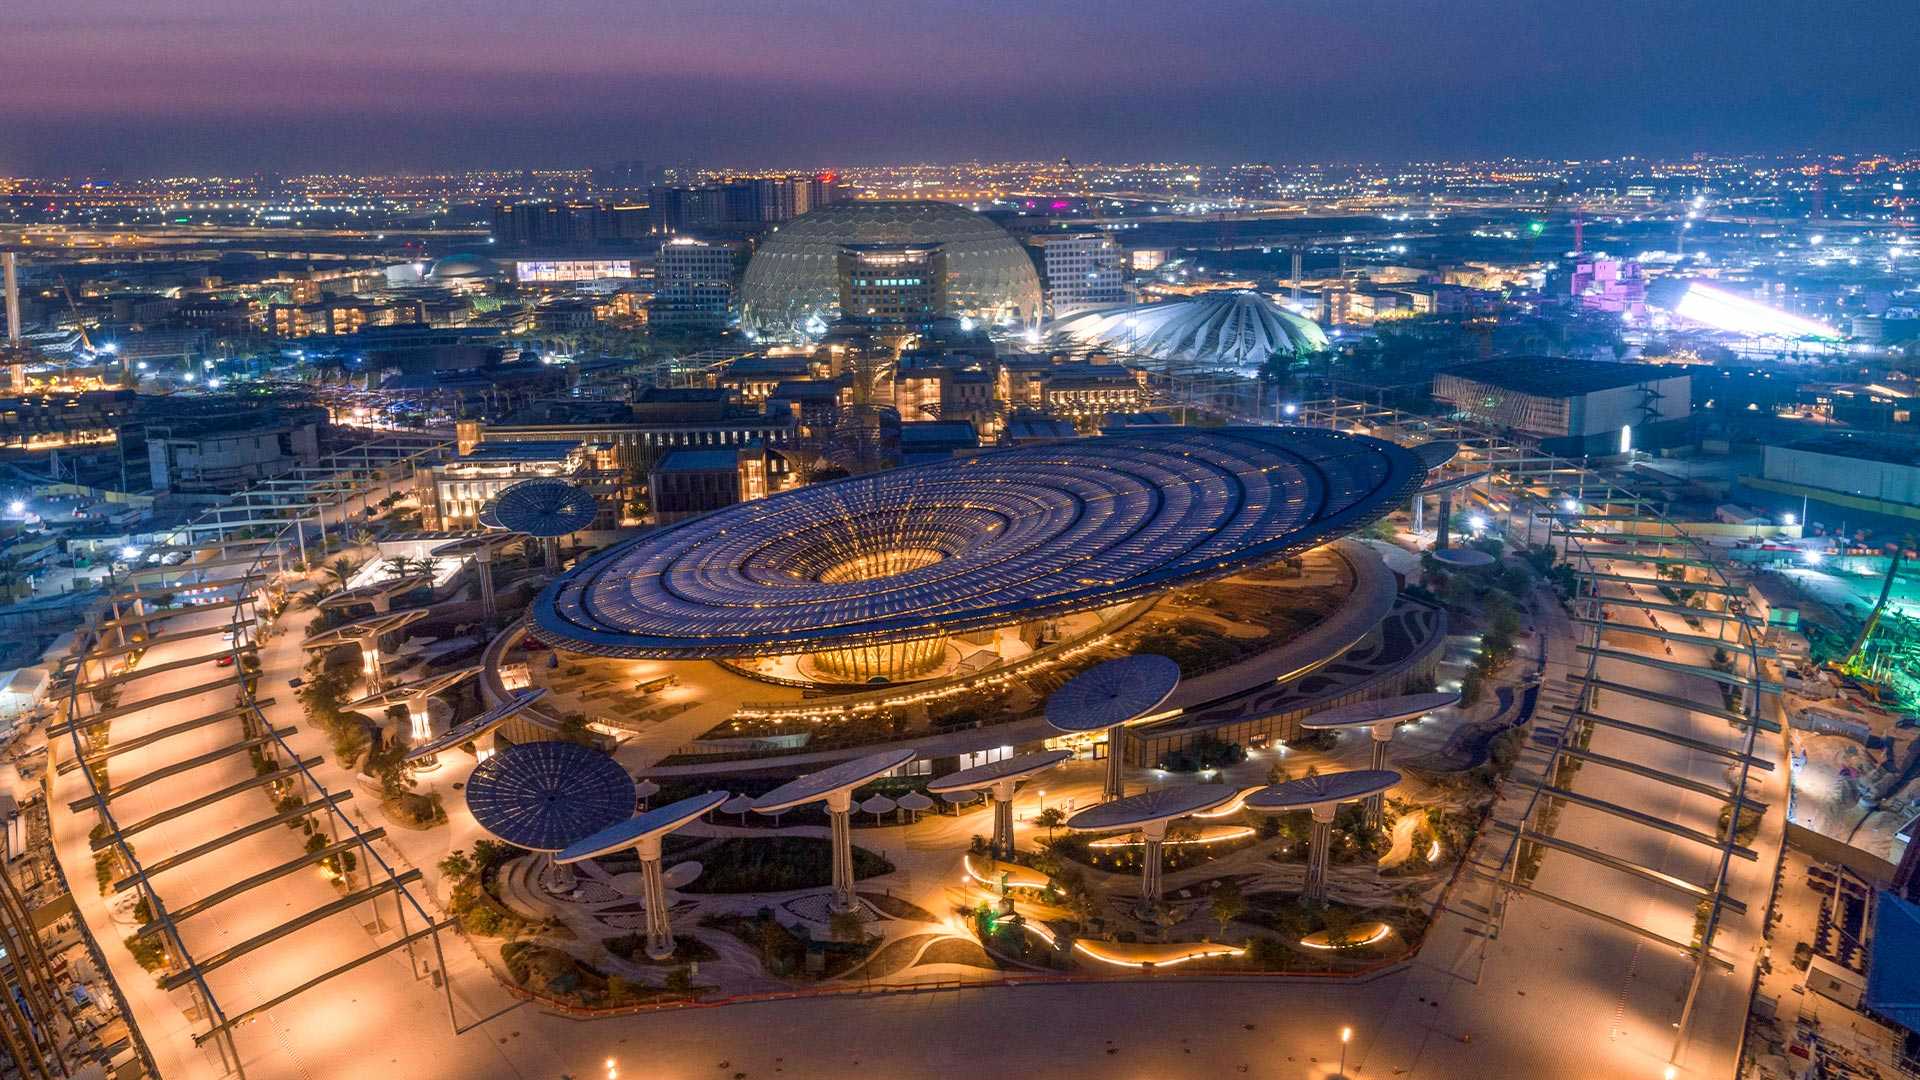 Expo 2020 in Dubai: Back to the future?